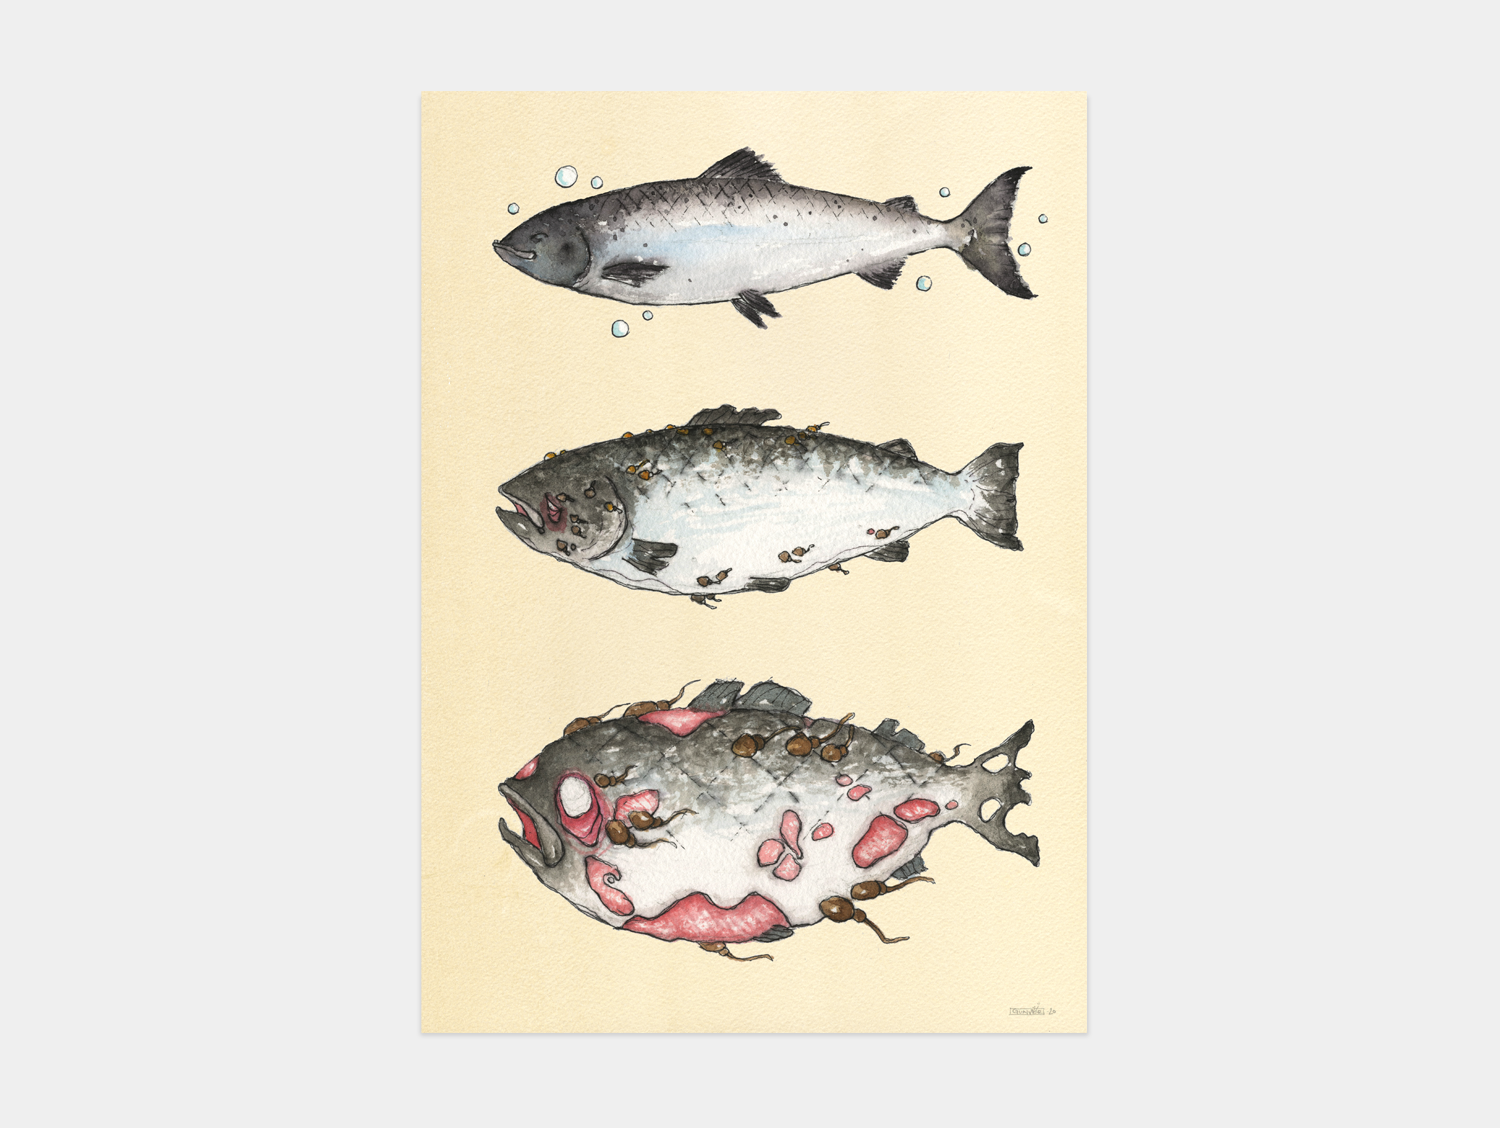 Print A2 - Salmon Louse Queen